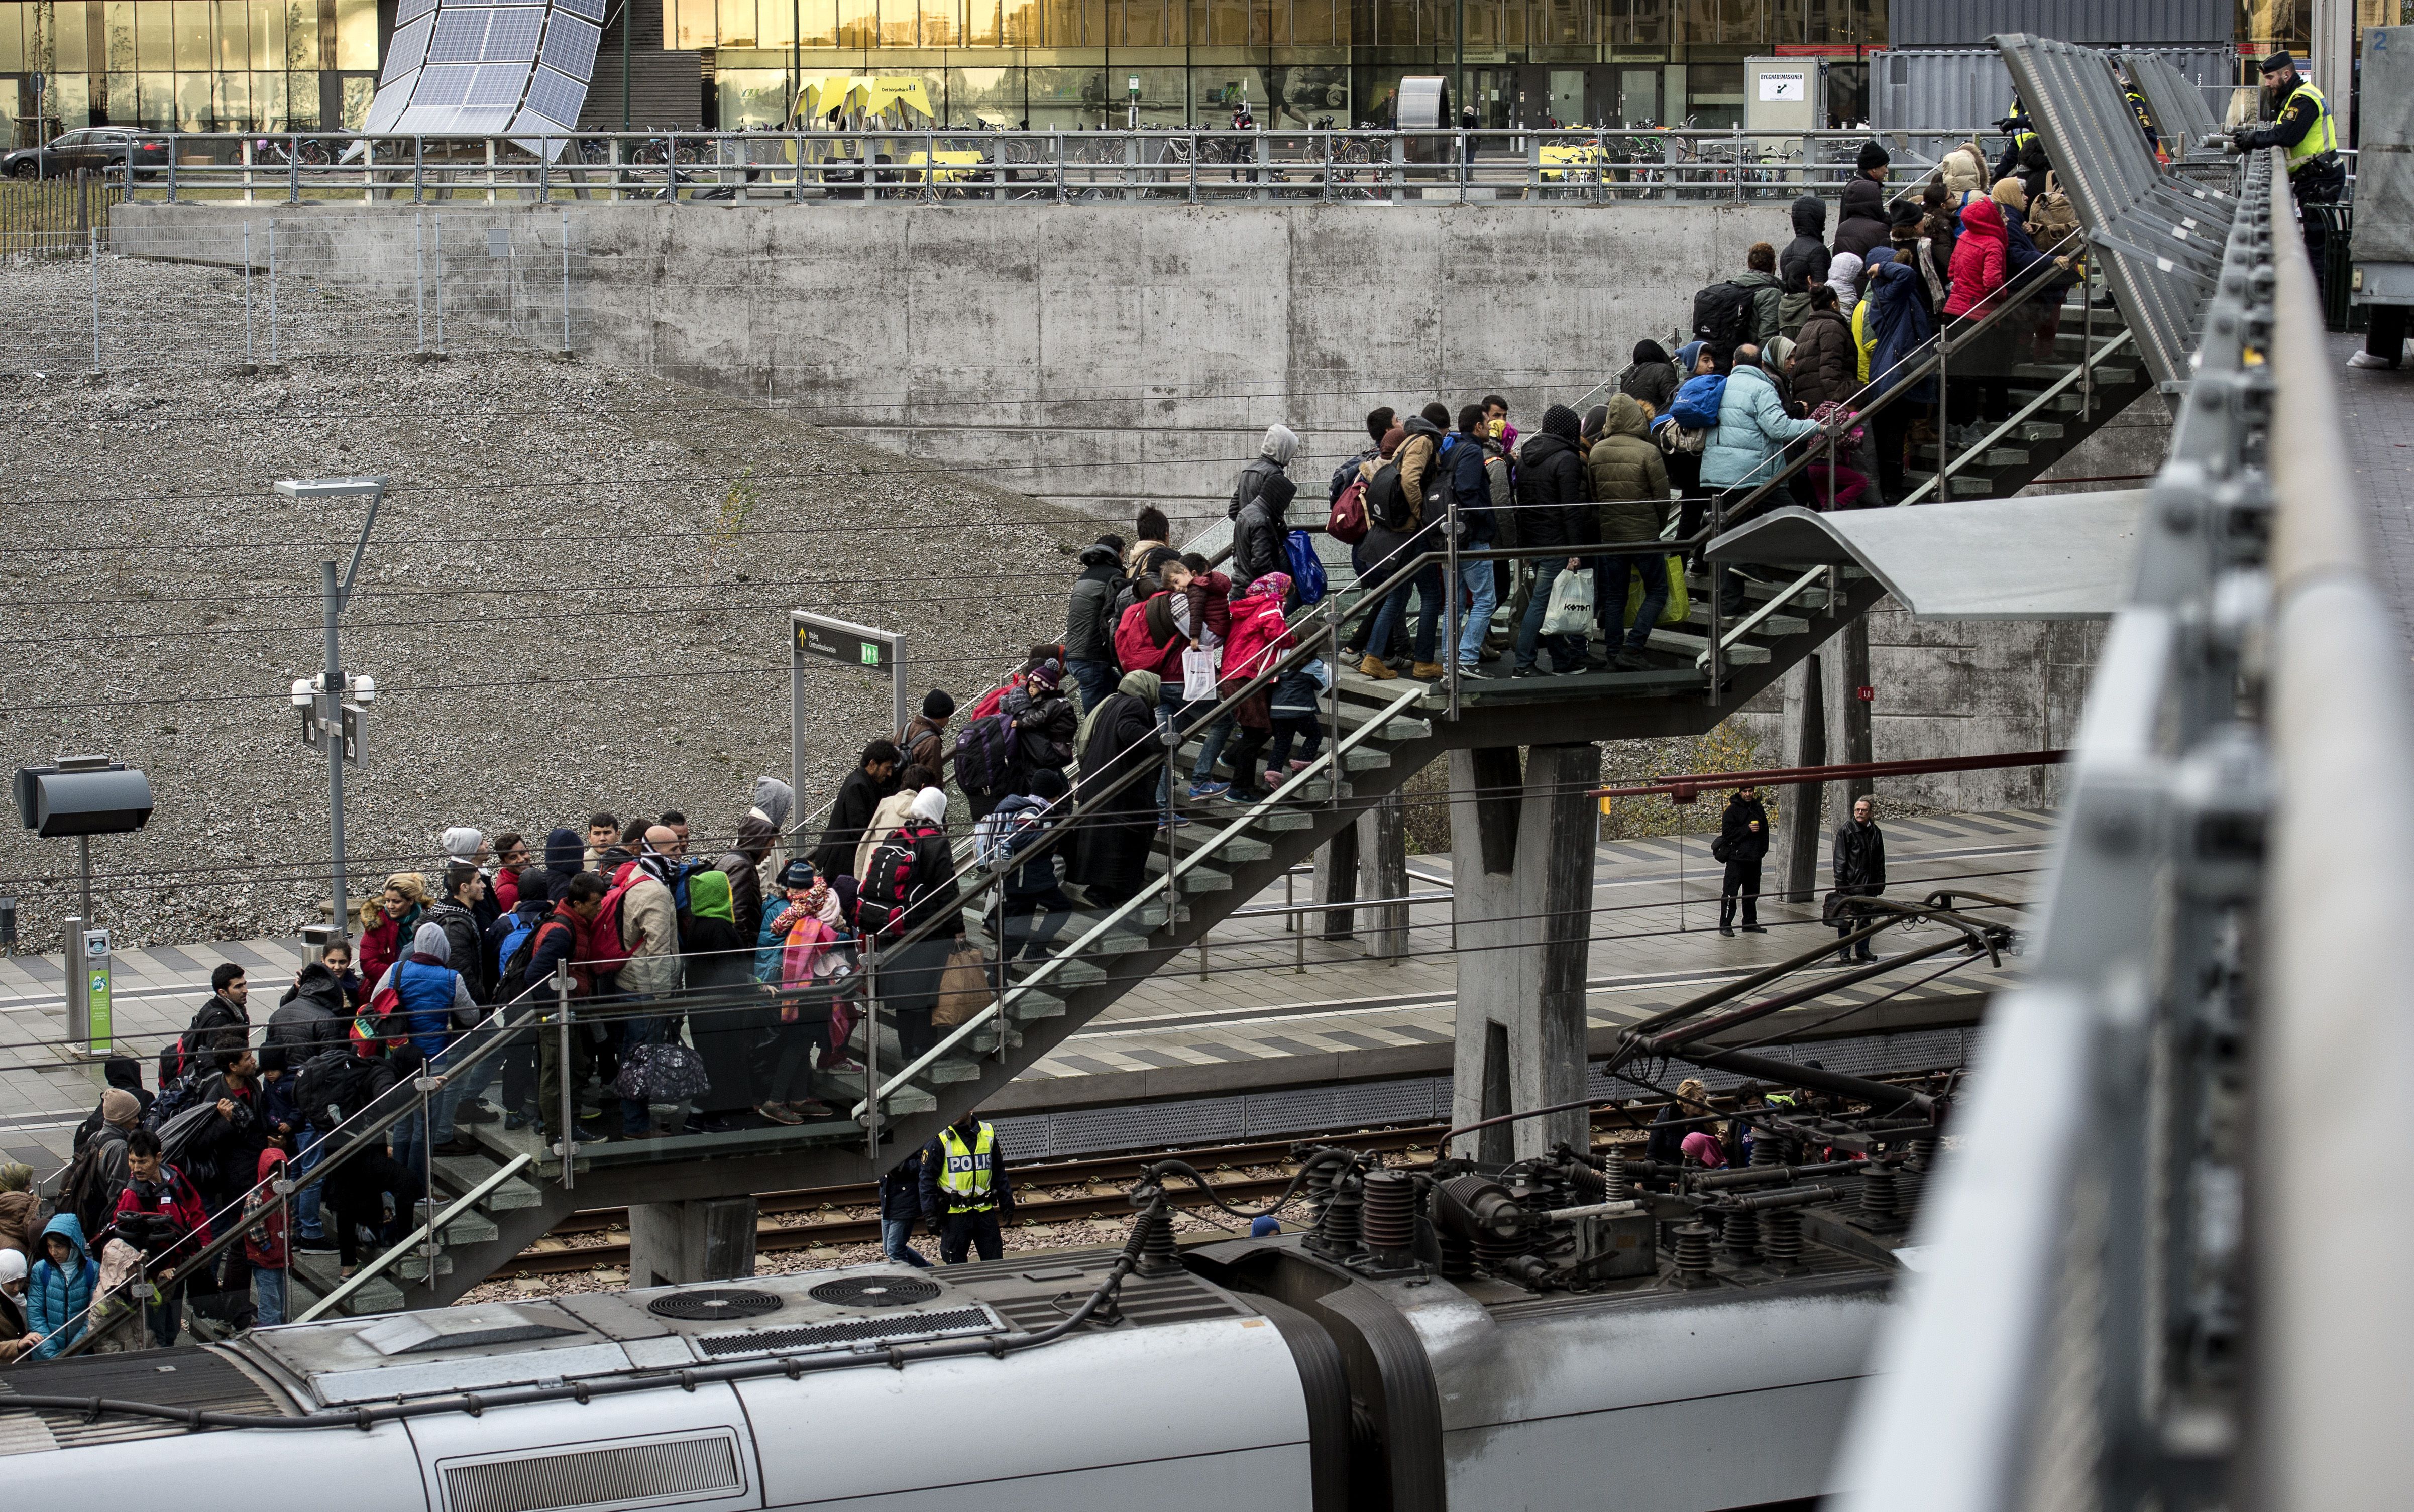 Dänemark: Sozialkreditsystem und Zwangsumsiedlungen gegen Ghettobildung von Migranten